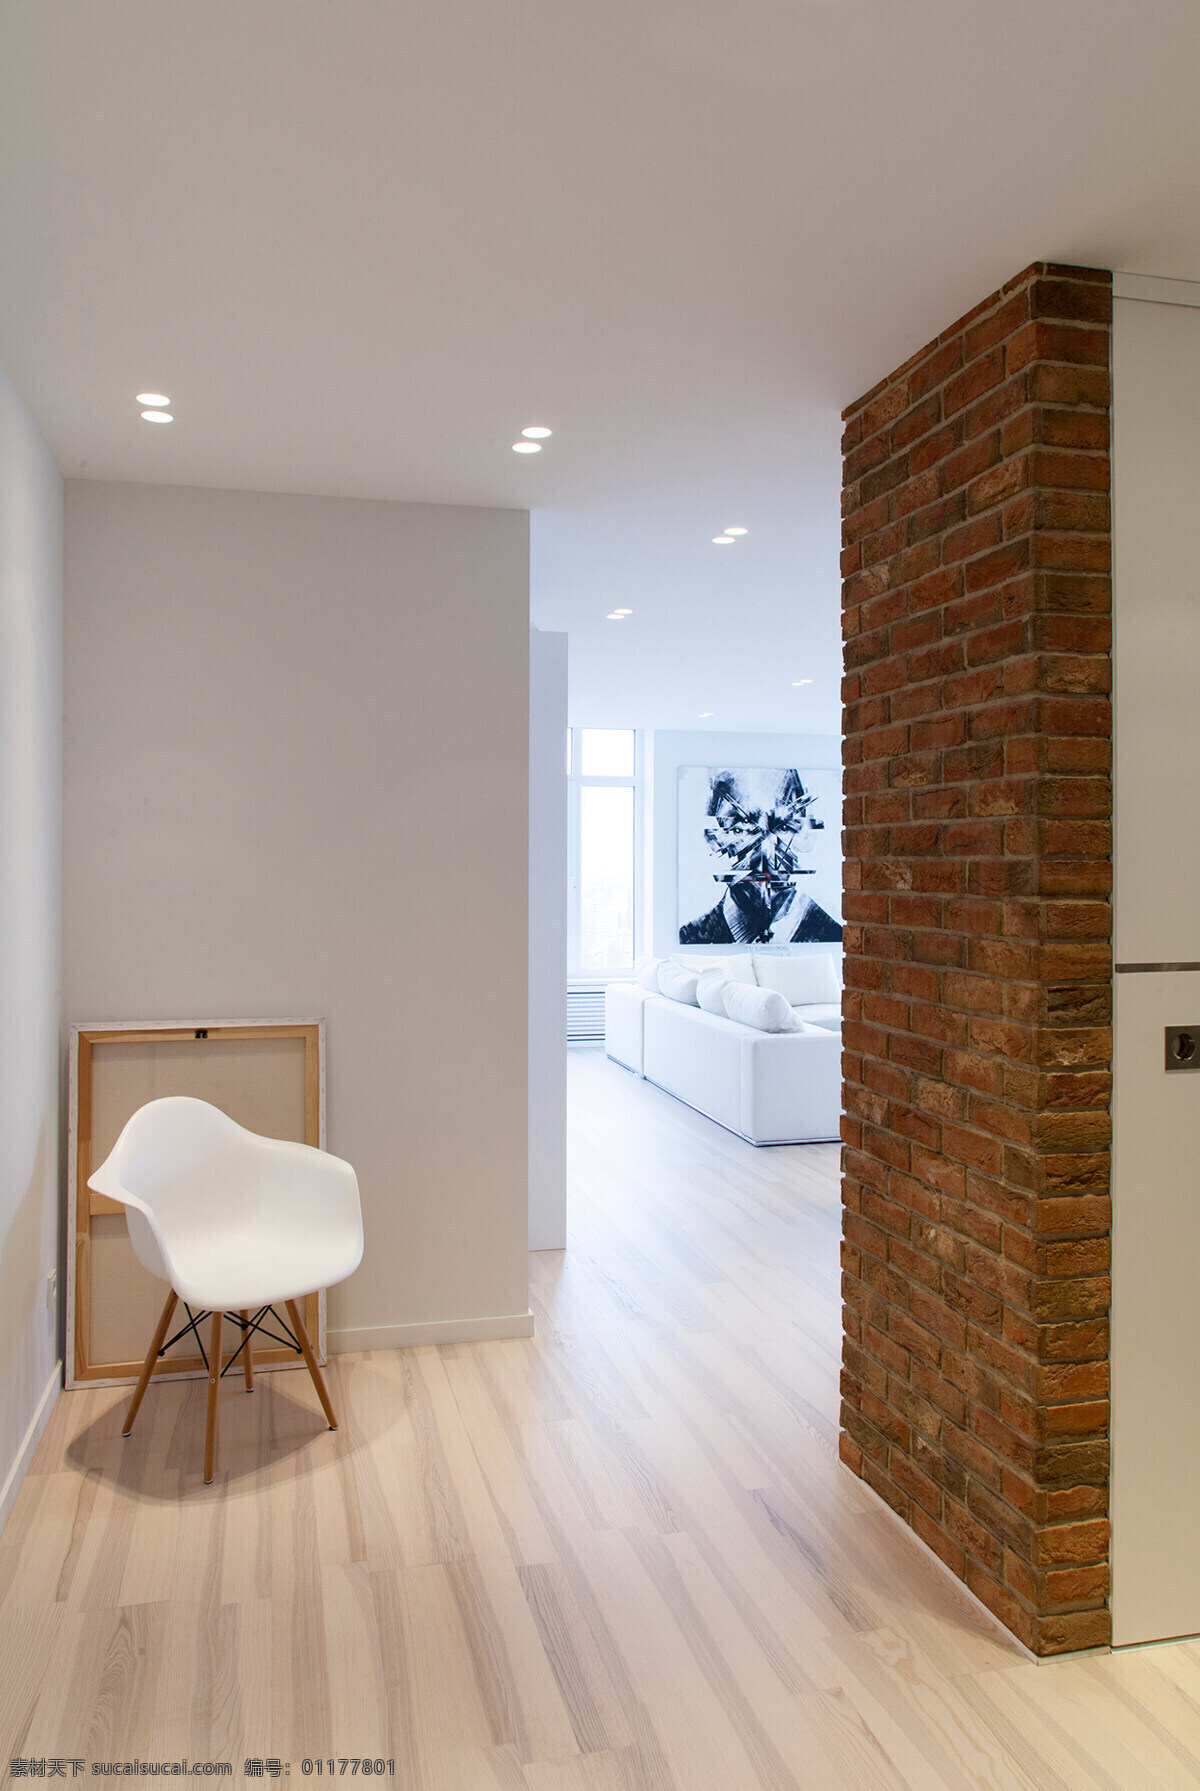 现代 清新 客厅 走廊 白色 椅子 室内装修 效果图 客厅装修 木地板 木制背景墙 白色椅子 白色壁灯